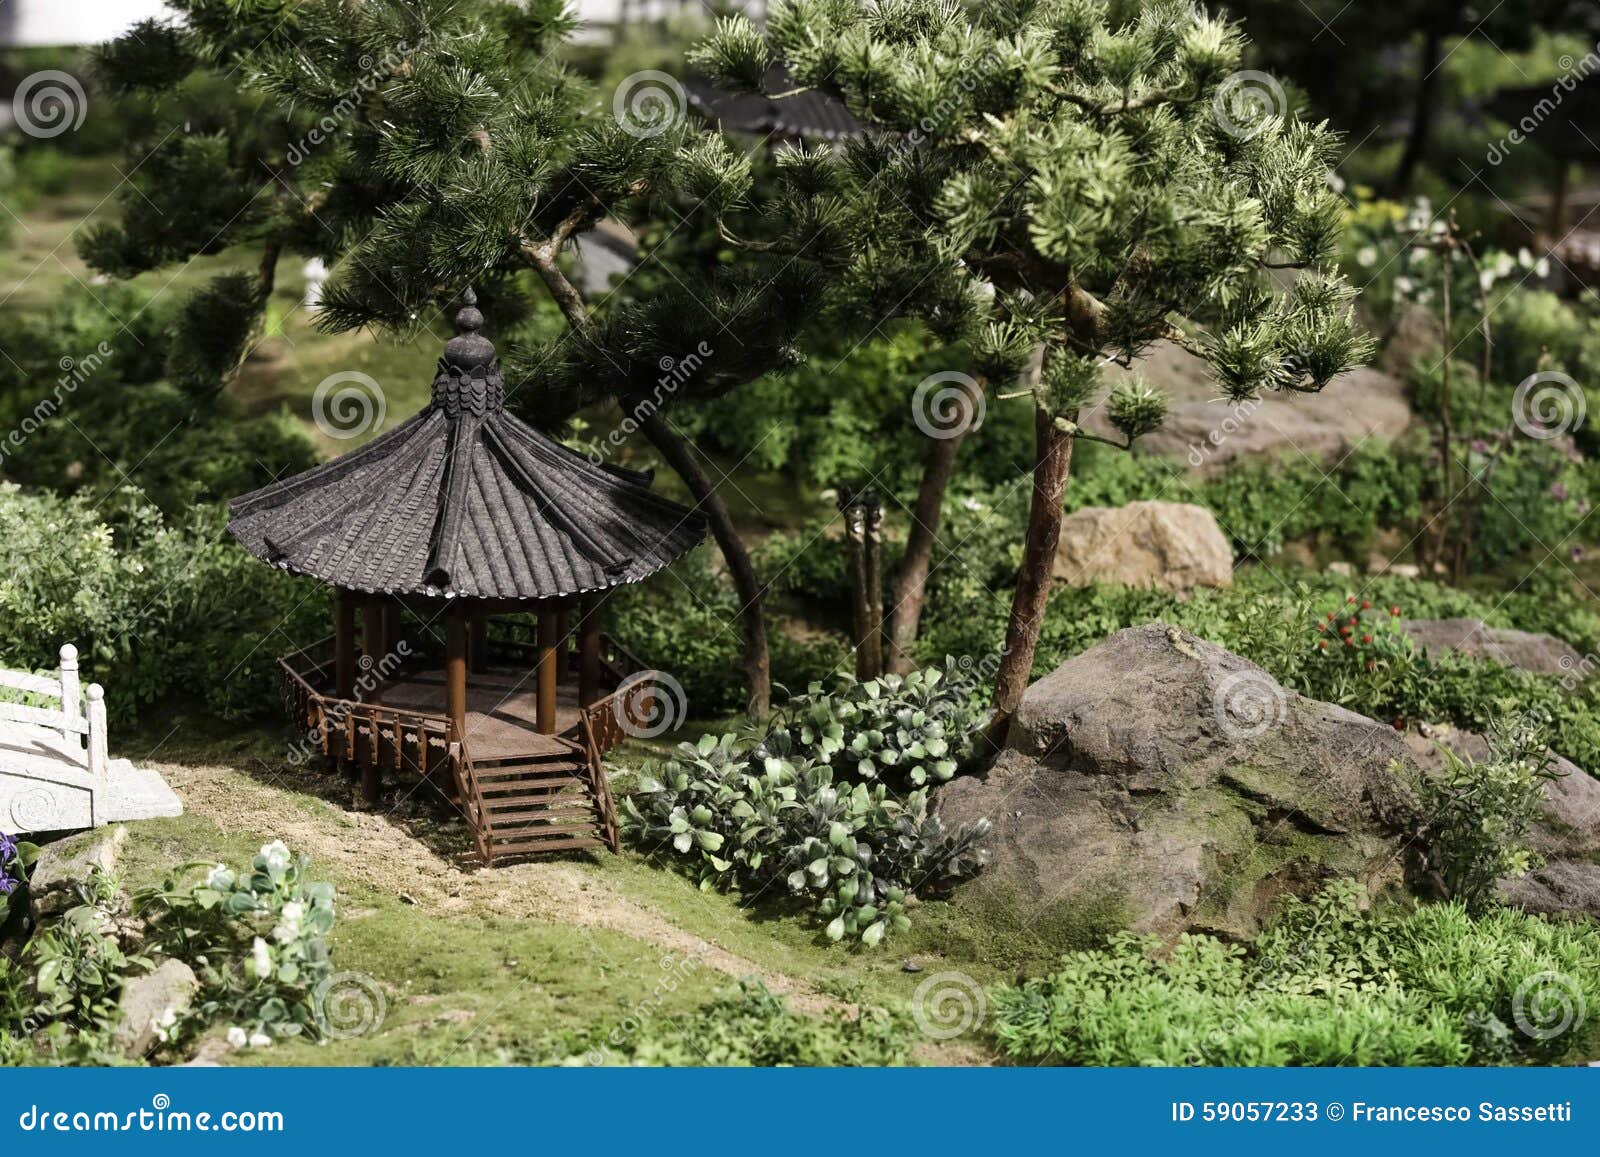 miniature house garden